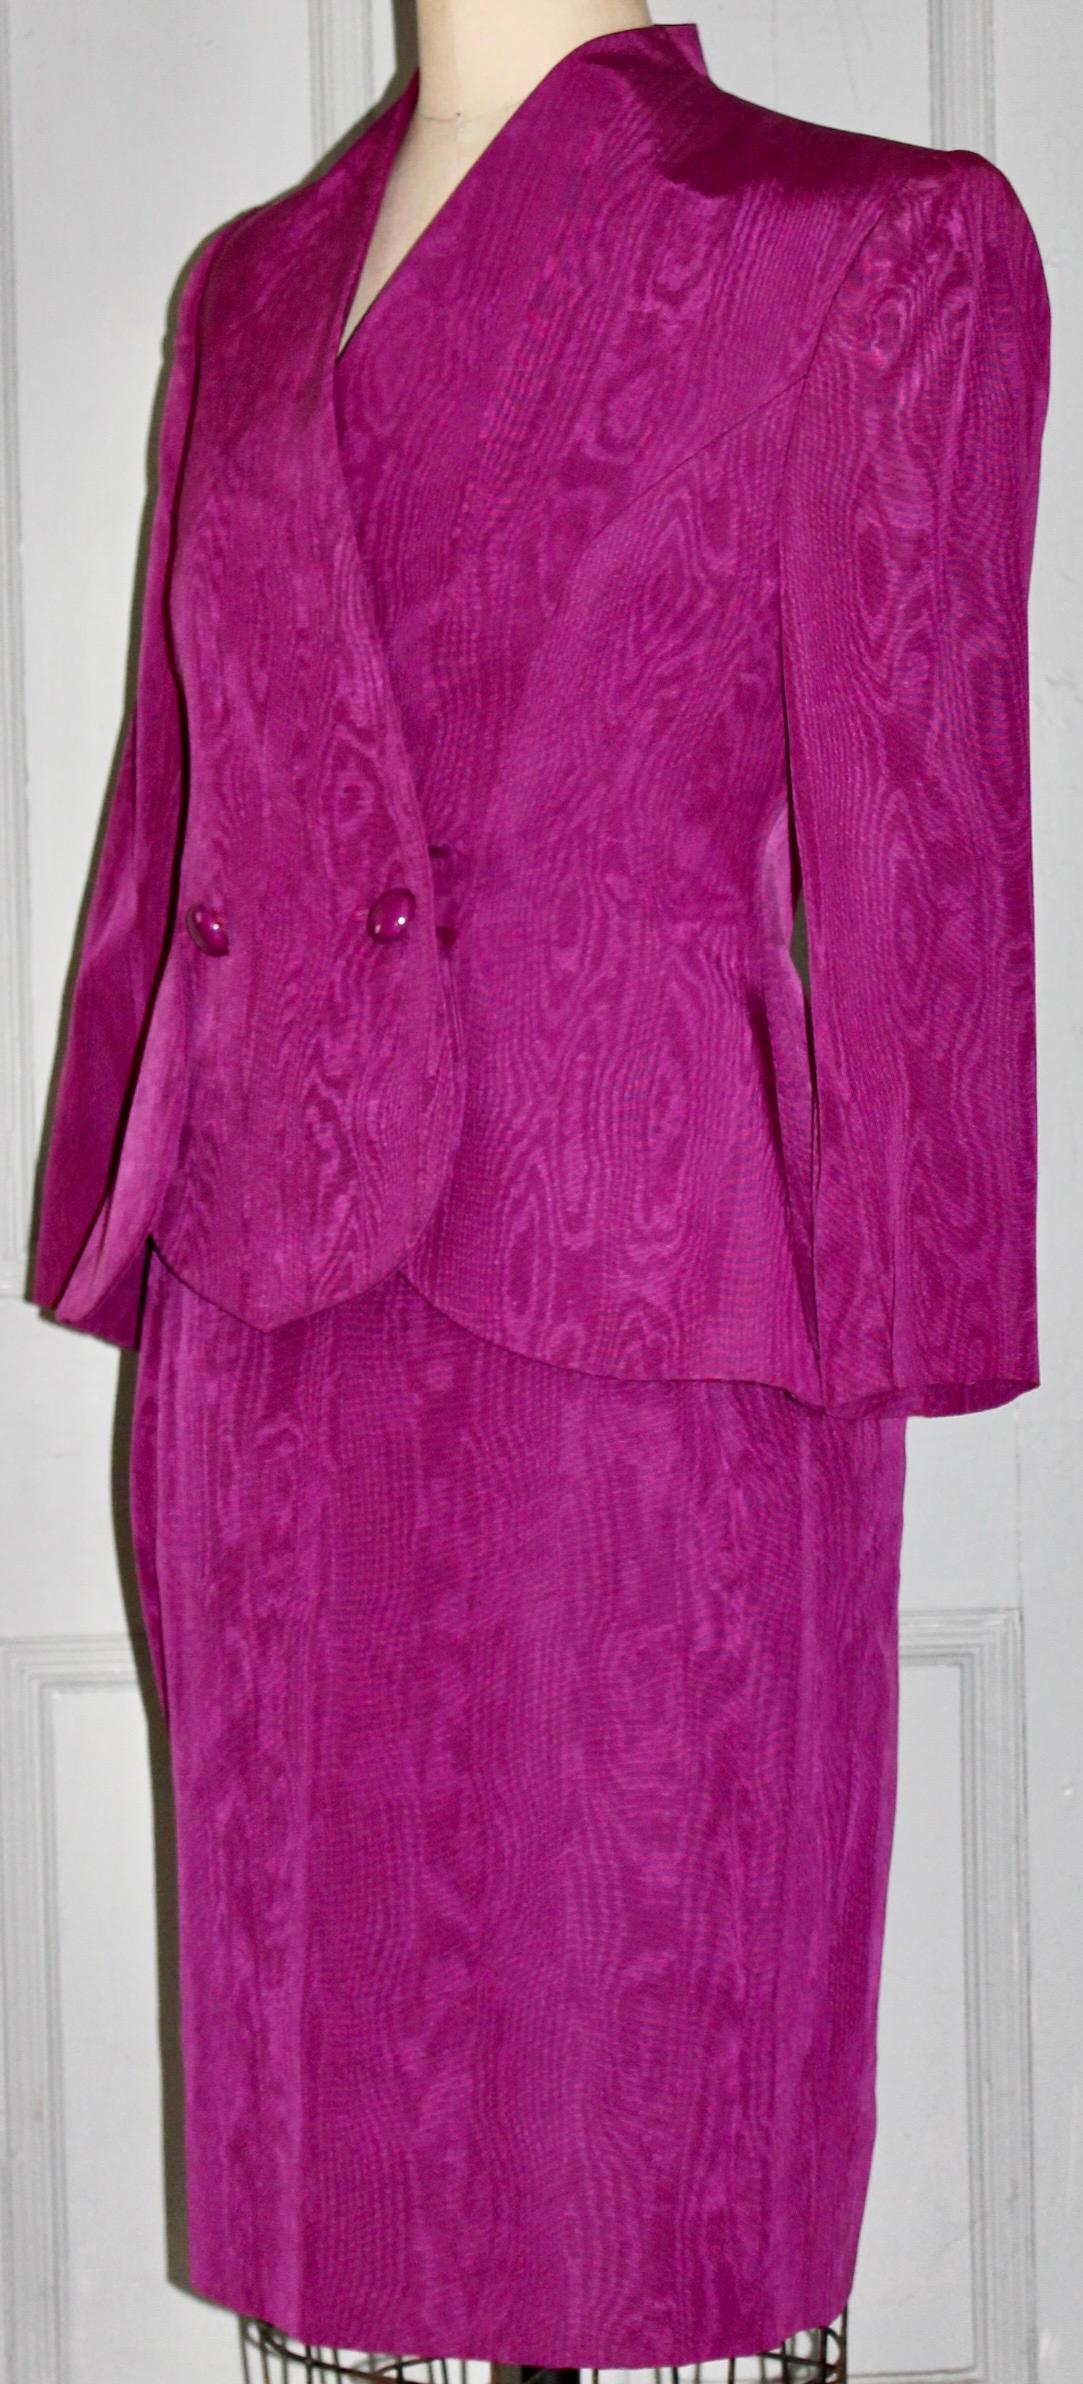 Vintage Lanvin 1980's Magenta Moire Anzug (Jacke und Rock) im Stil von YSL. A Größe 42, Baumwolle/Viskose und Etikett: Lanvin Paris, Hergestellt in Frankreich. Länge des Rocks 24